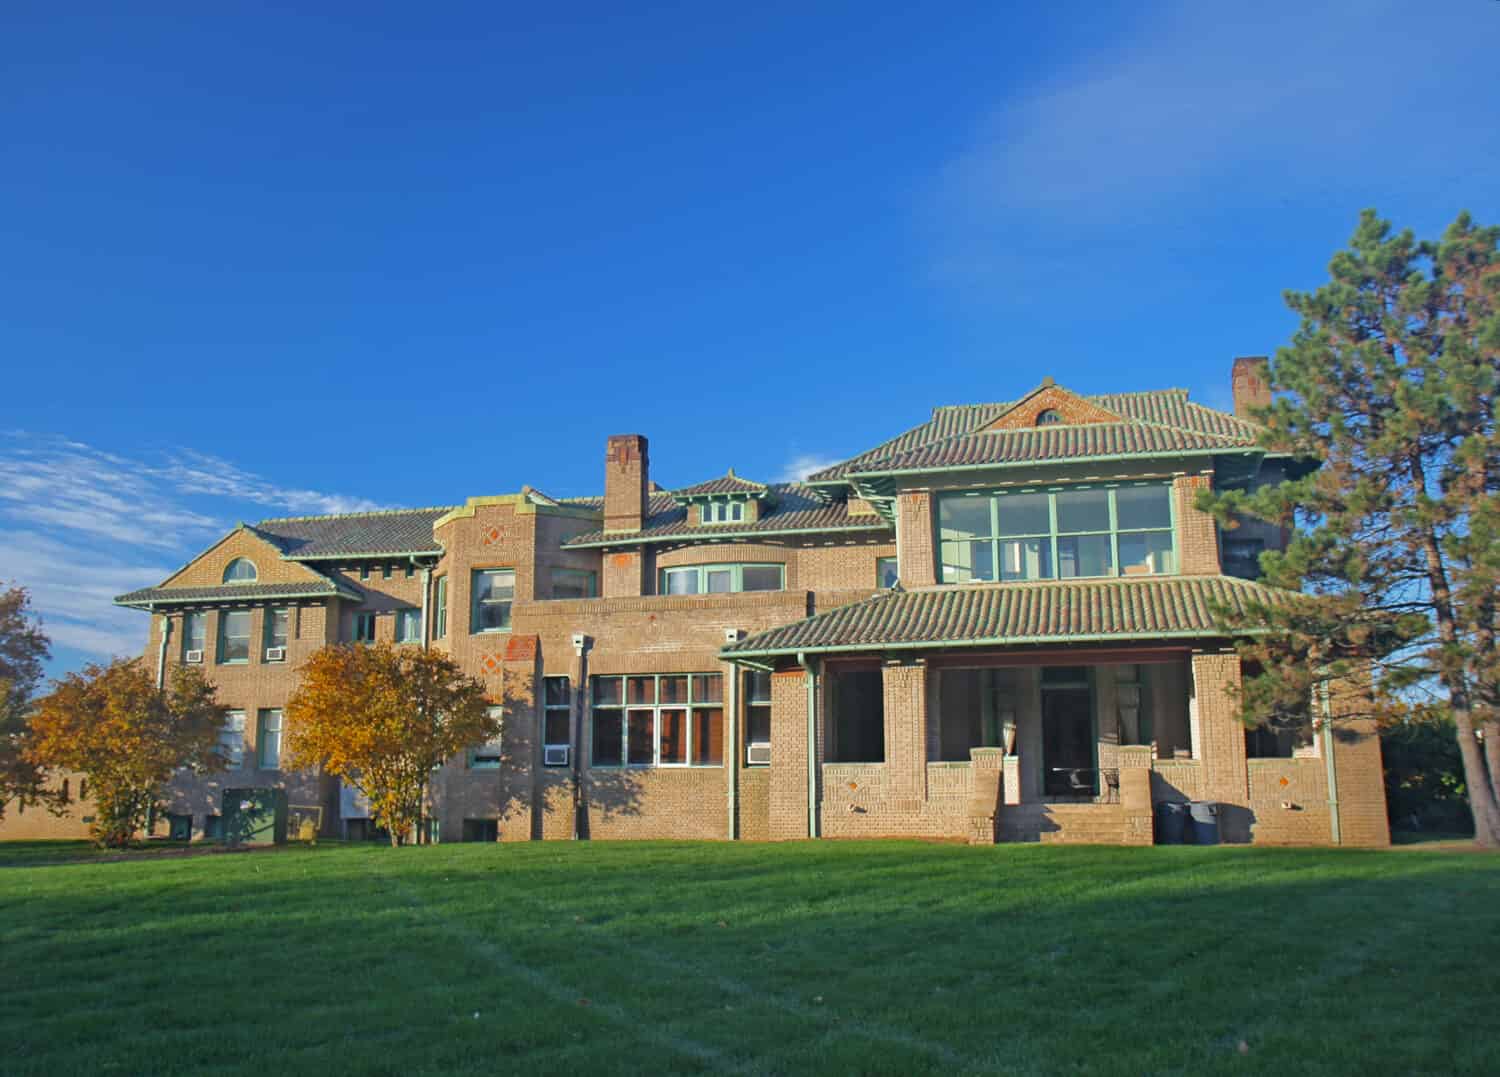 Ufficio ammissioni nella Wheeler-Stokely Mansion nel campus della Marian University, Indianapolis, Indiana